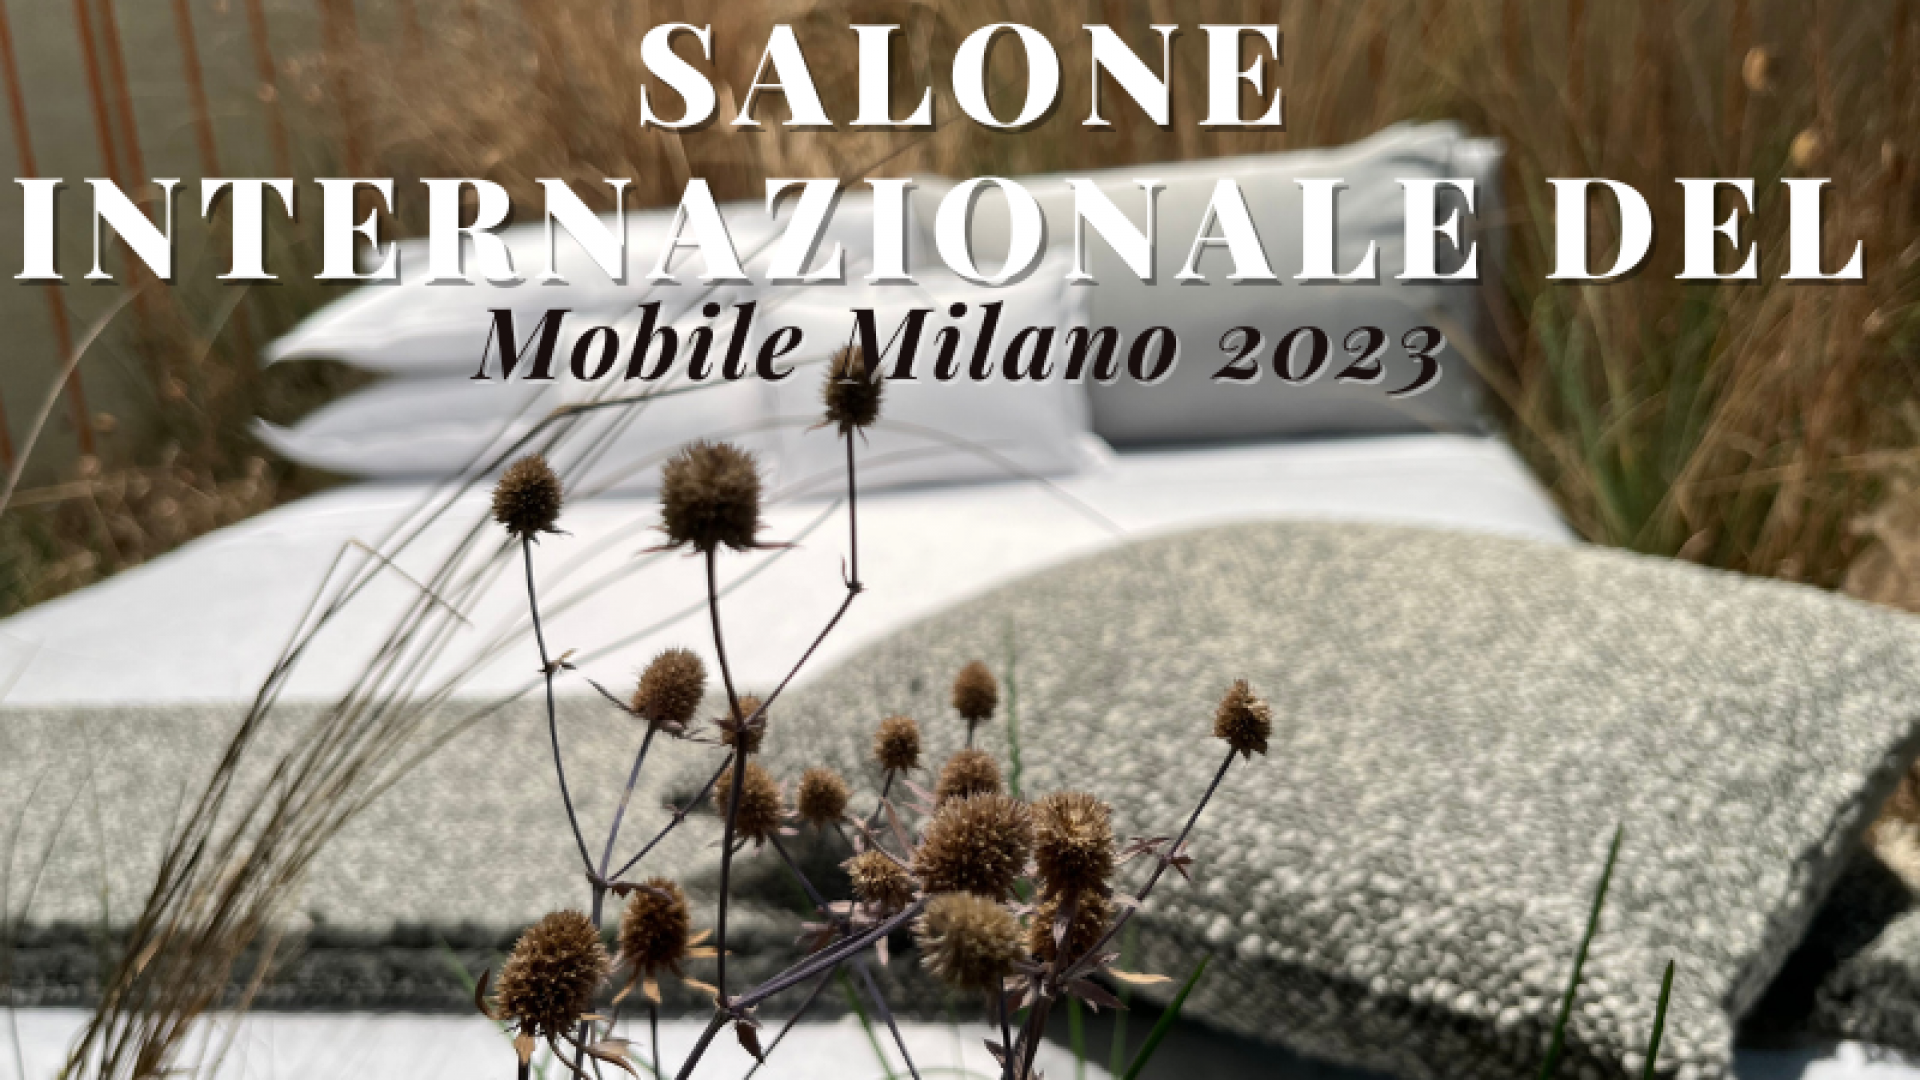 Salone Internazionale del Mobile Milano 2023